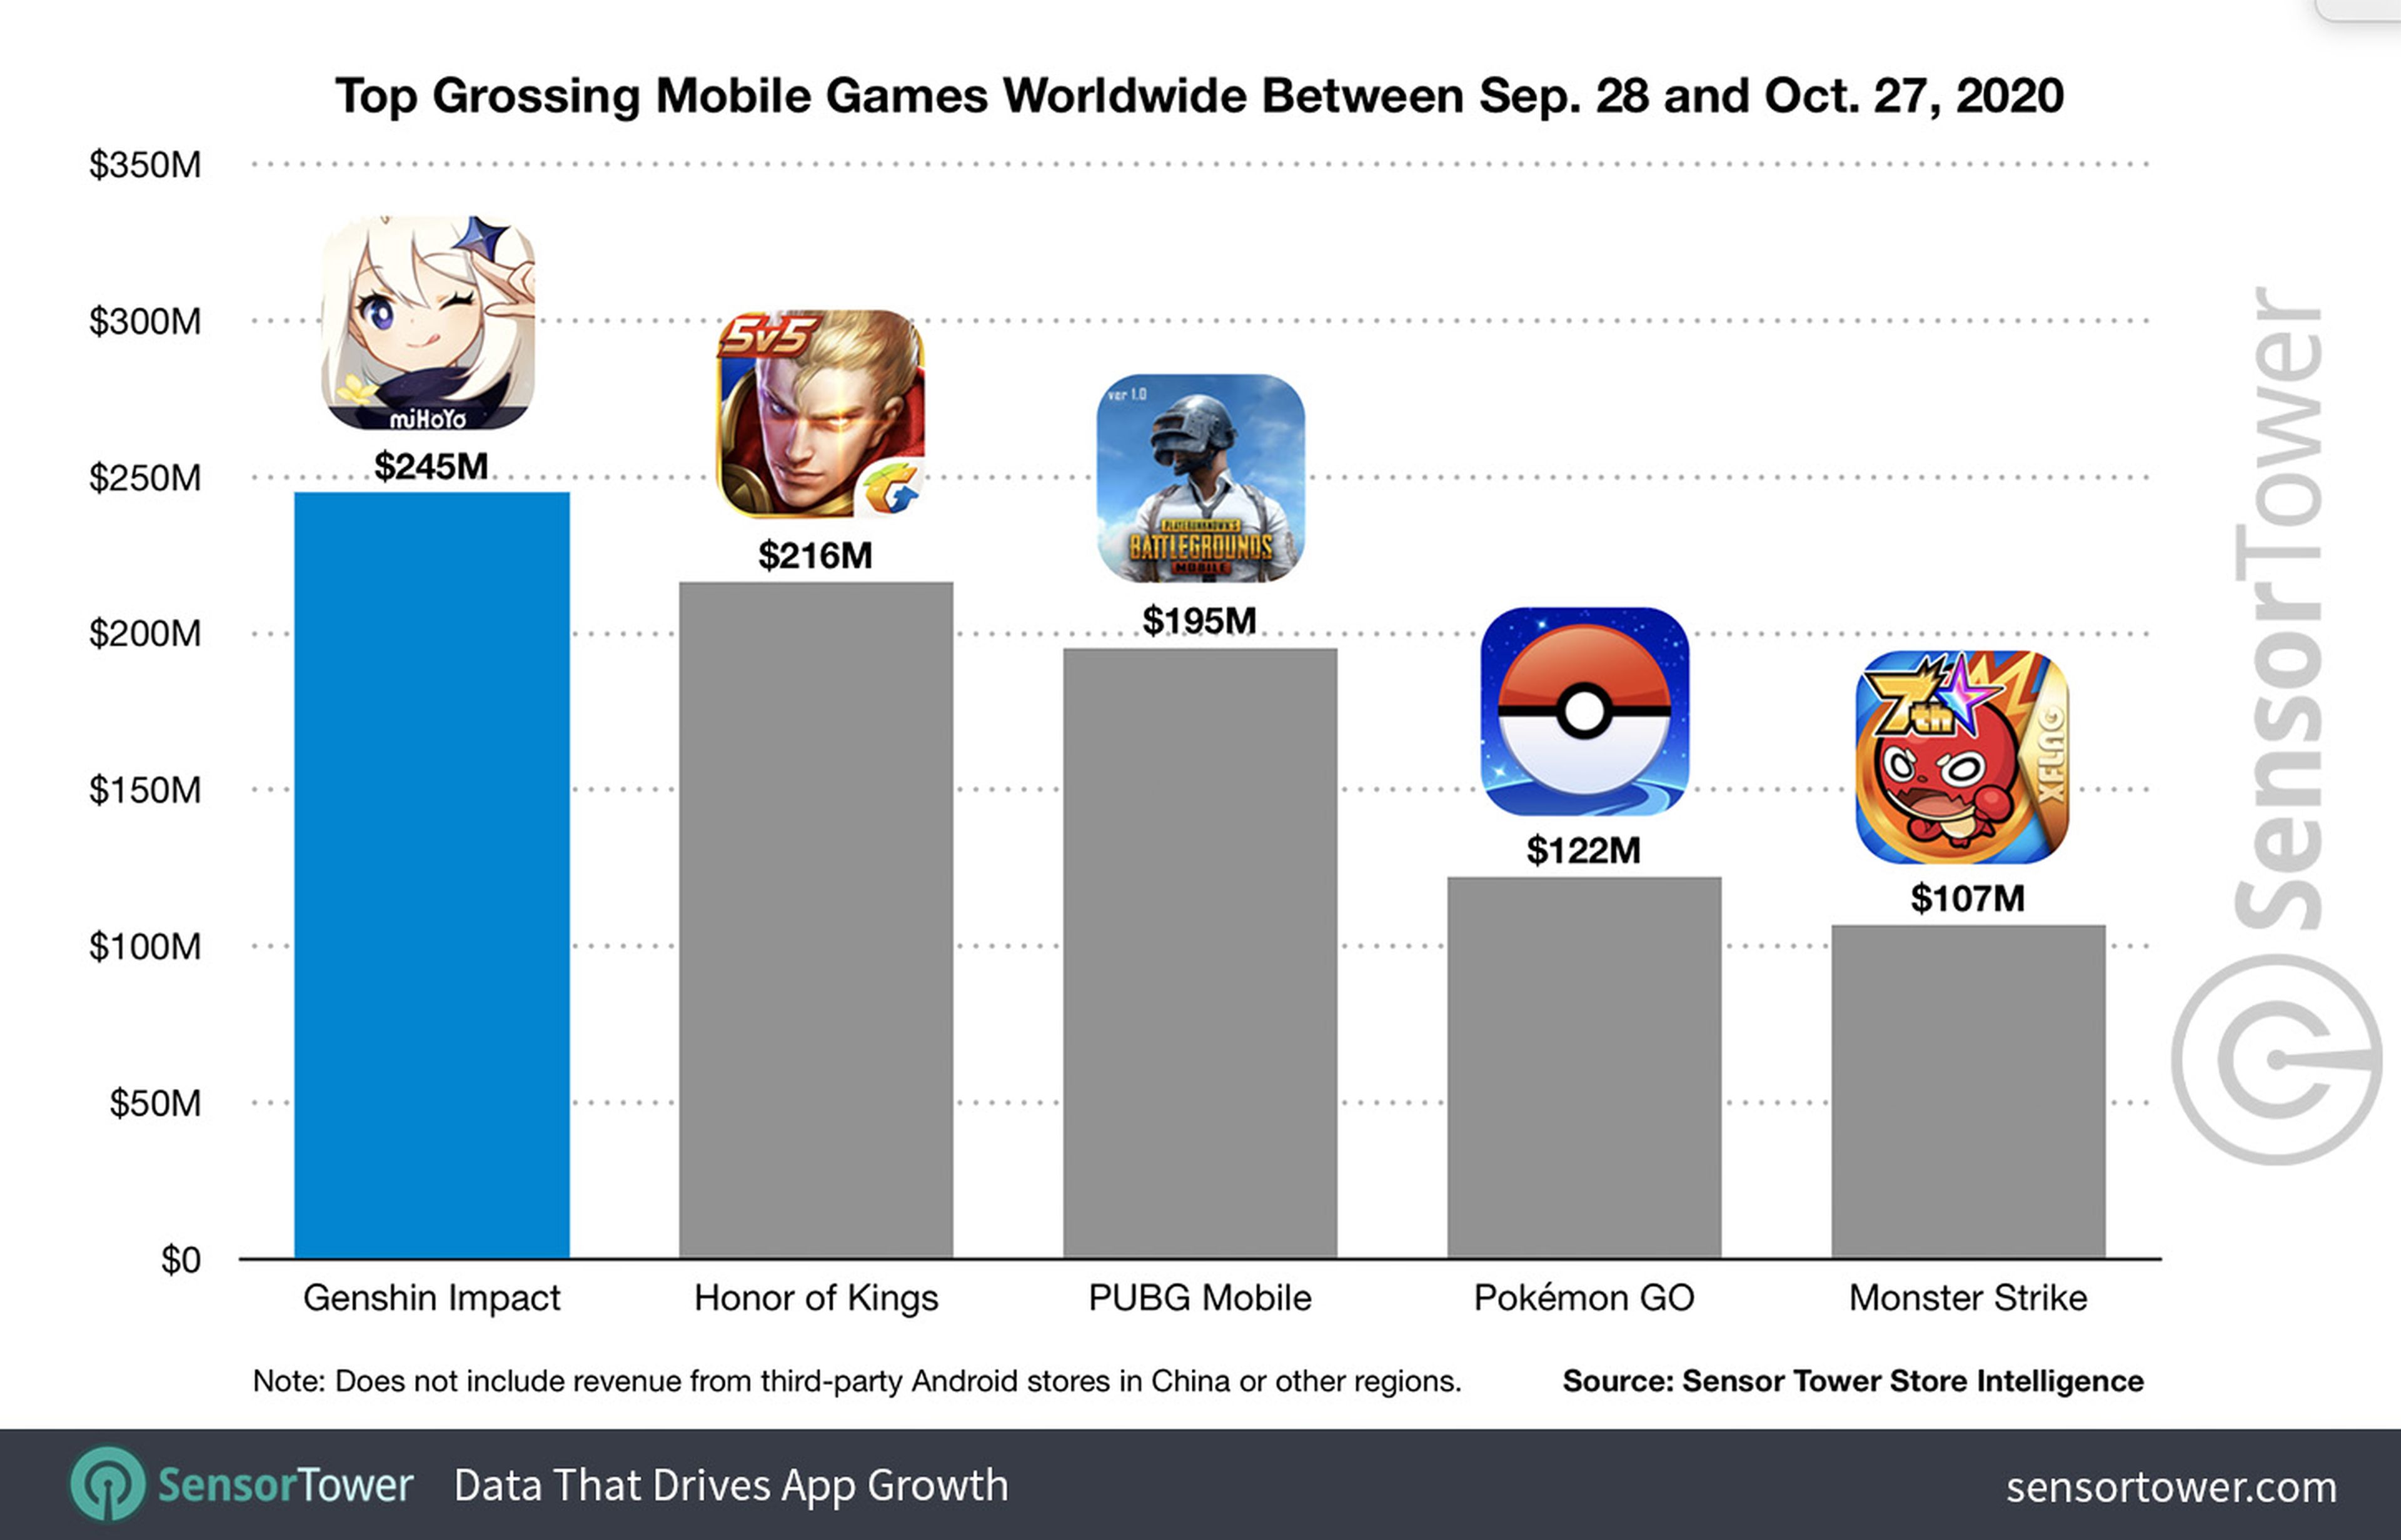 Juego con más recaudaciones entre septiembre y octubre - Genshin Impact - Pokémon GO - PUBG Mobile